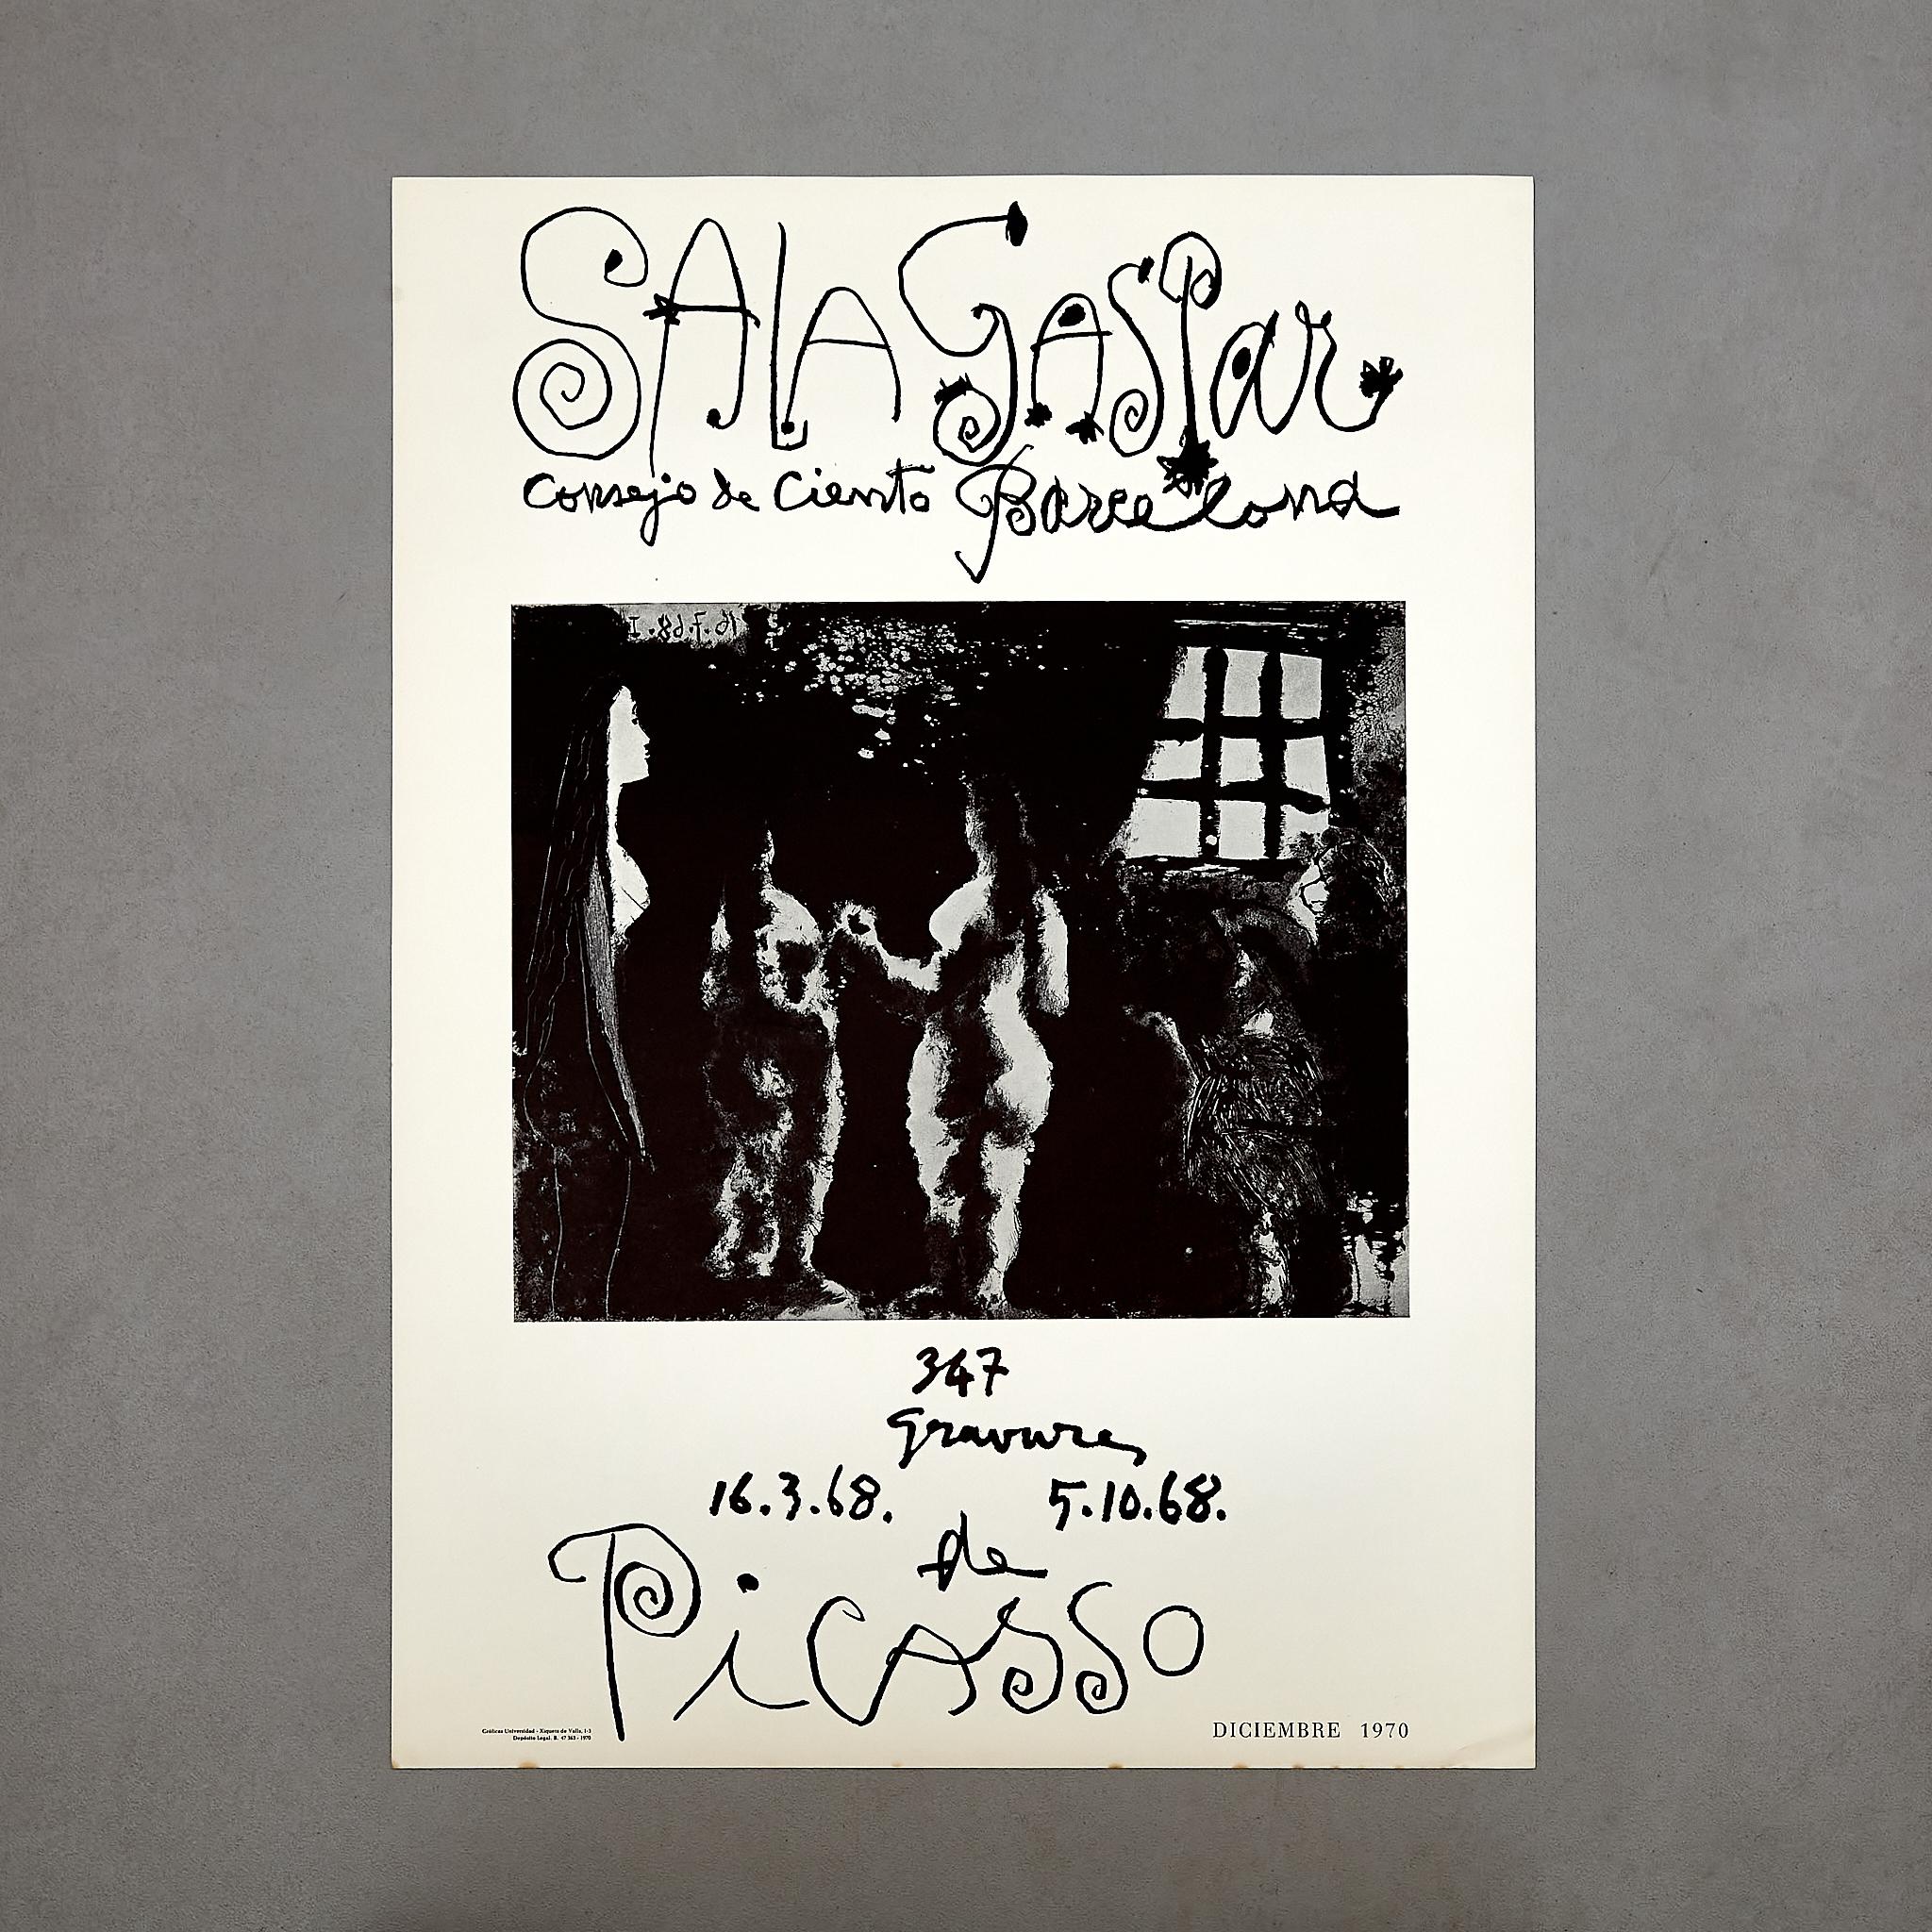 Tauchen Sie ein in die fesselnde Welt von Pablo Picasso mit diesem lithografischen Ausstellungsplakat. Dieses in Spanien hergestellte und in Barcelona um 1968 gedruckte Plakat zeigt die Ausstellung des berühmten Künstlers in der renommierten Galerie